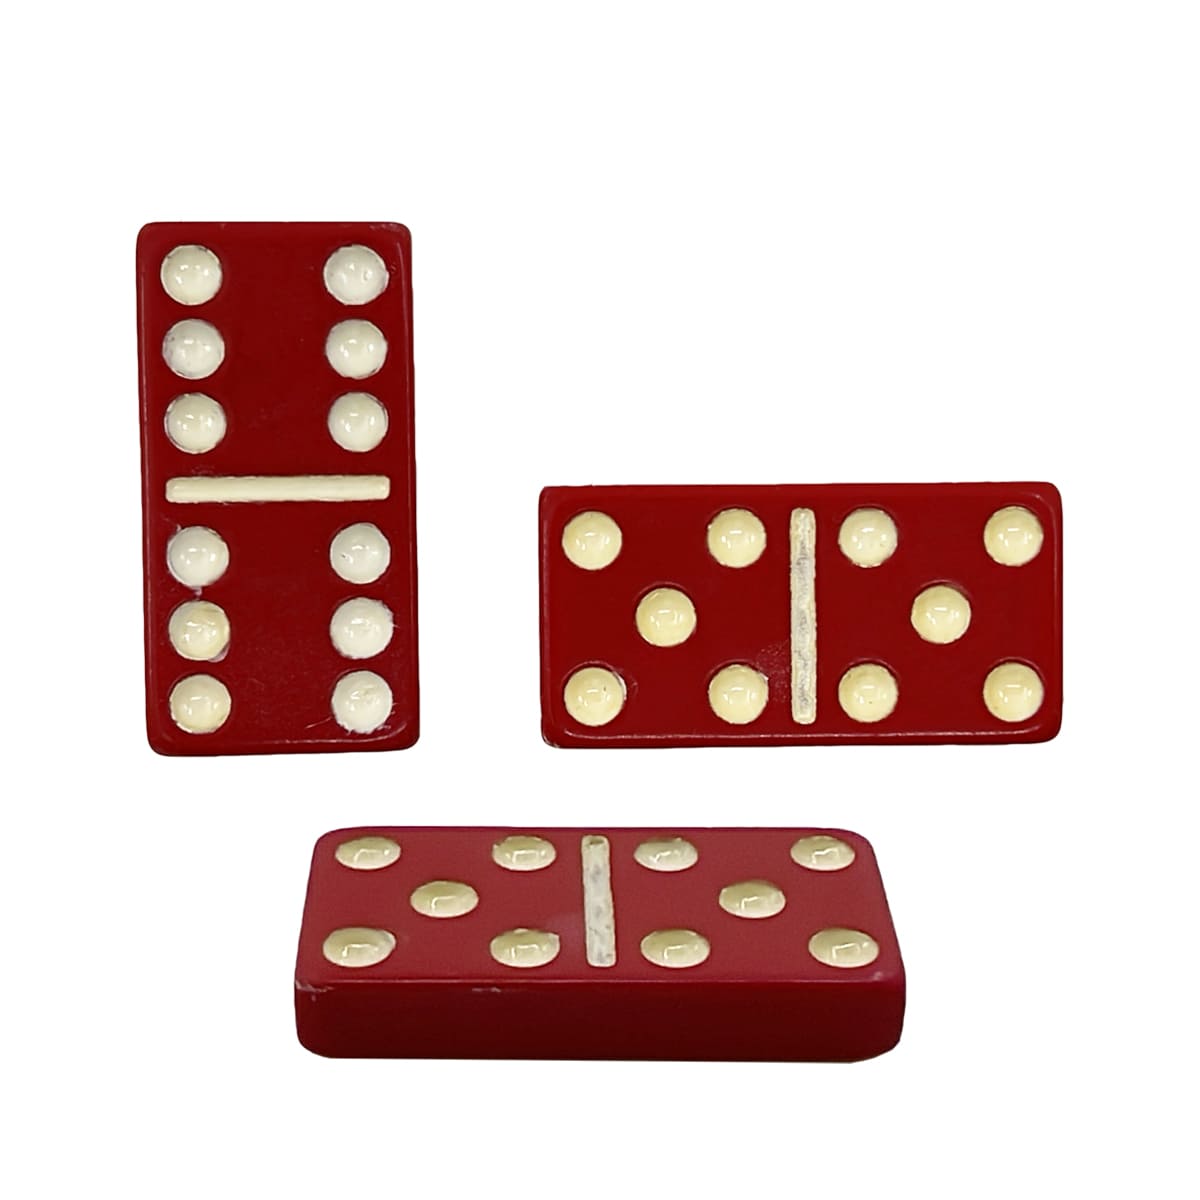 D6 telhas de dominó vermelhas duplas seis